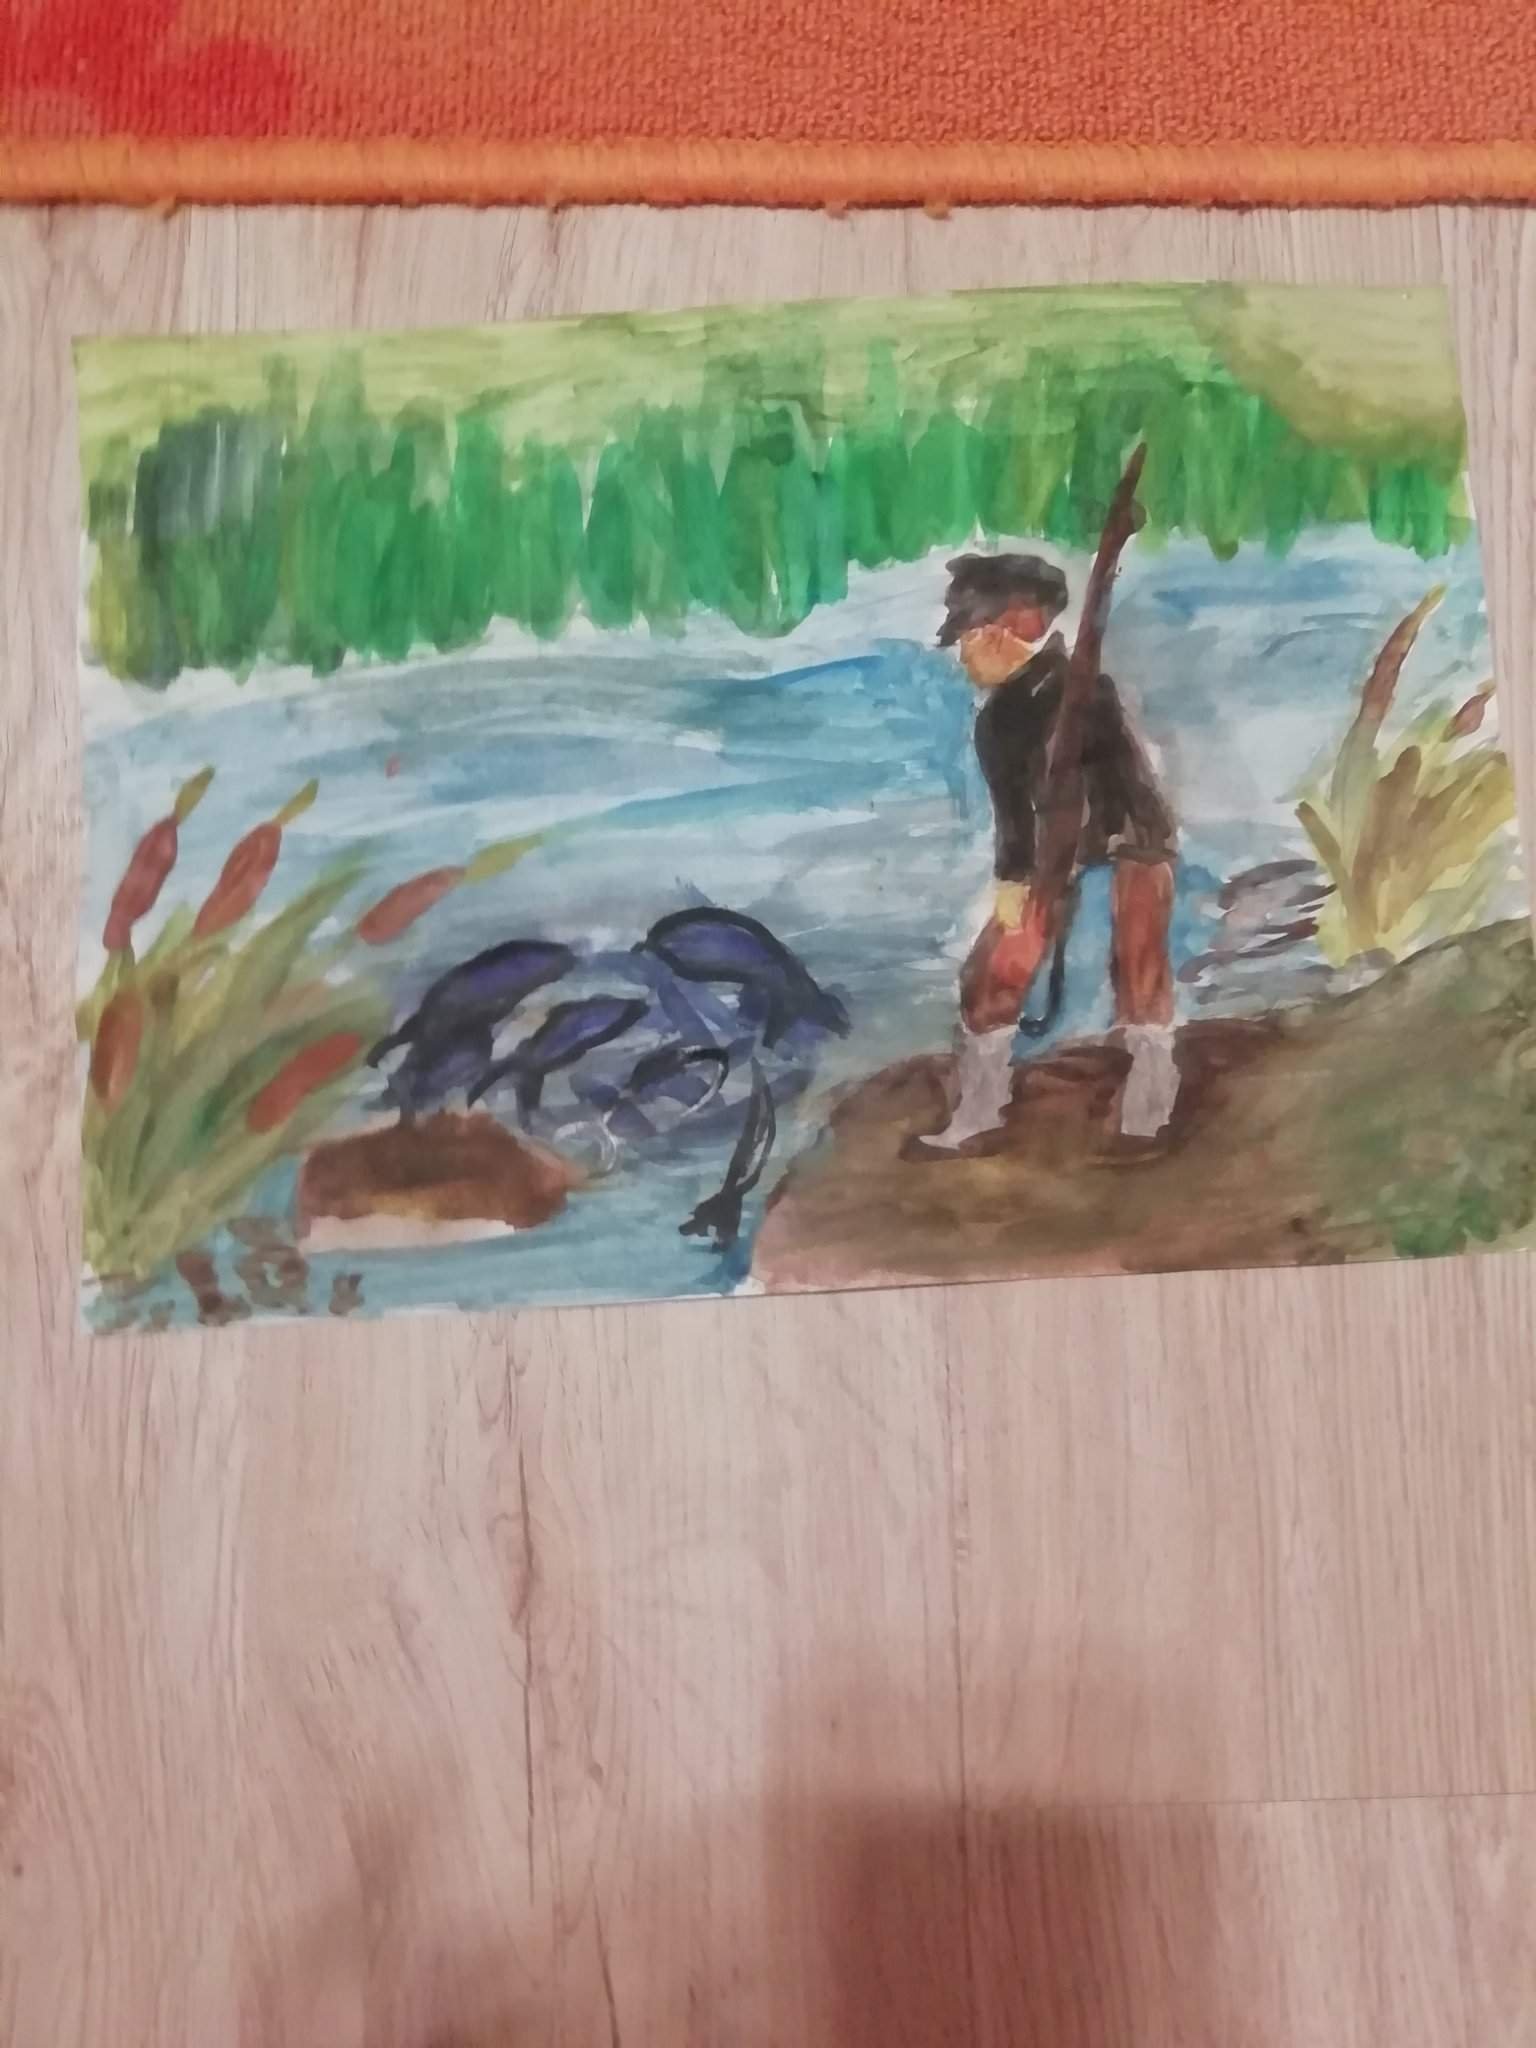 Портрет васютки из васюткино озеро. Иллюстрация к произведению Васюткино озеро. Нарисовать иллюстрацию к рассказу Васюткино озеро. Иллюстрация к рассказу Васюткино озеро. Иллюстрация к рассказу "Васюткина озеро.